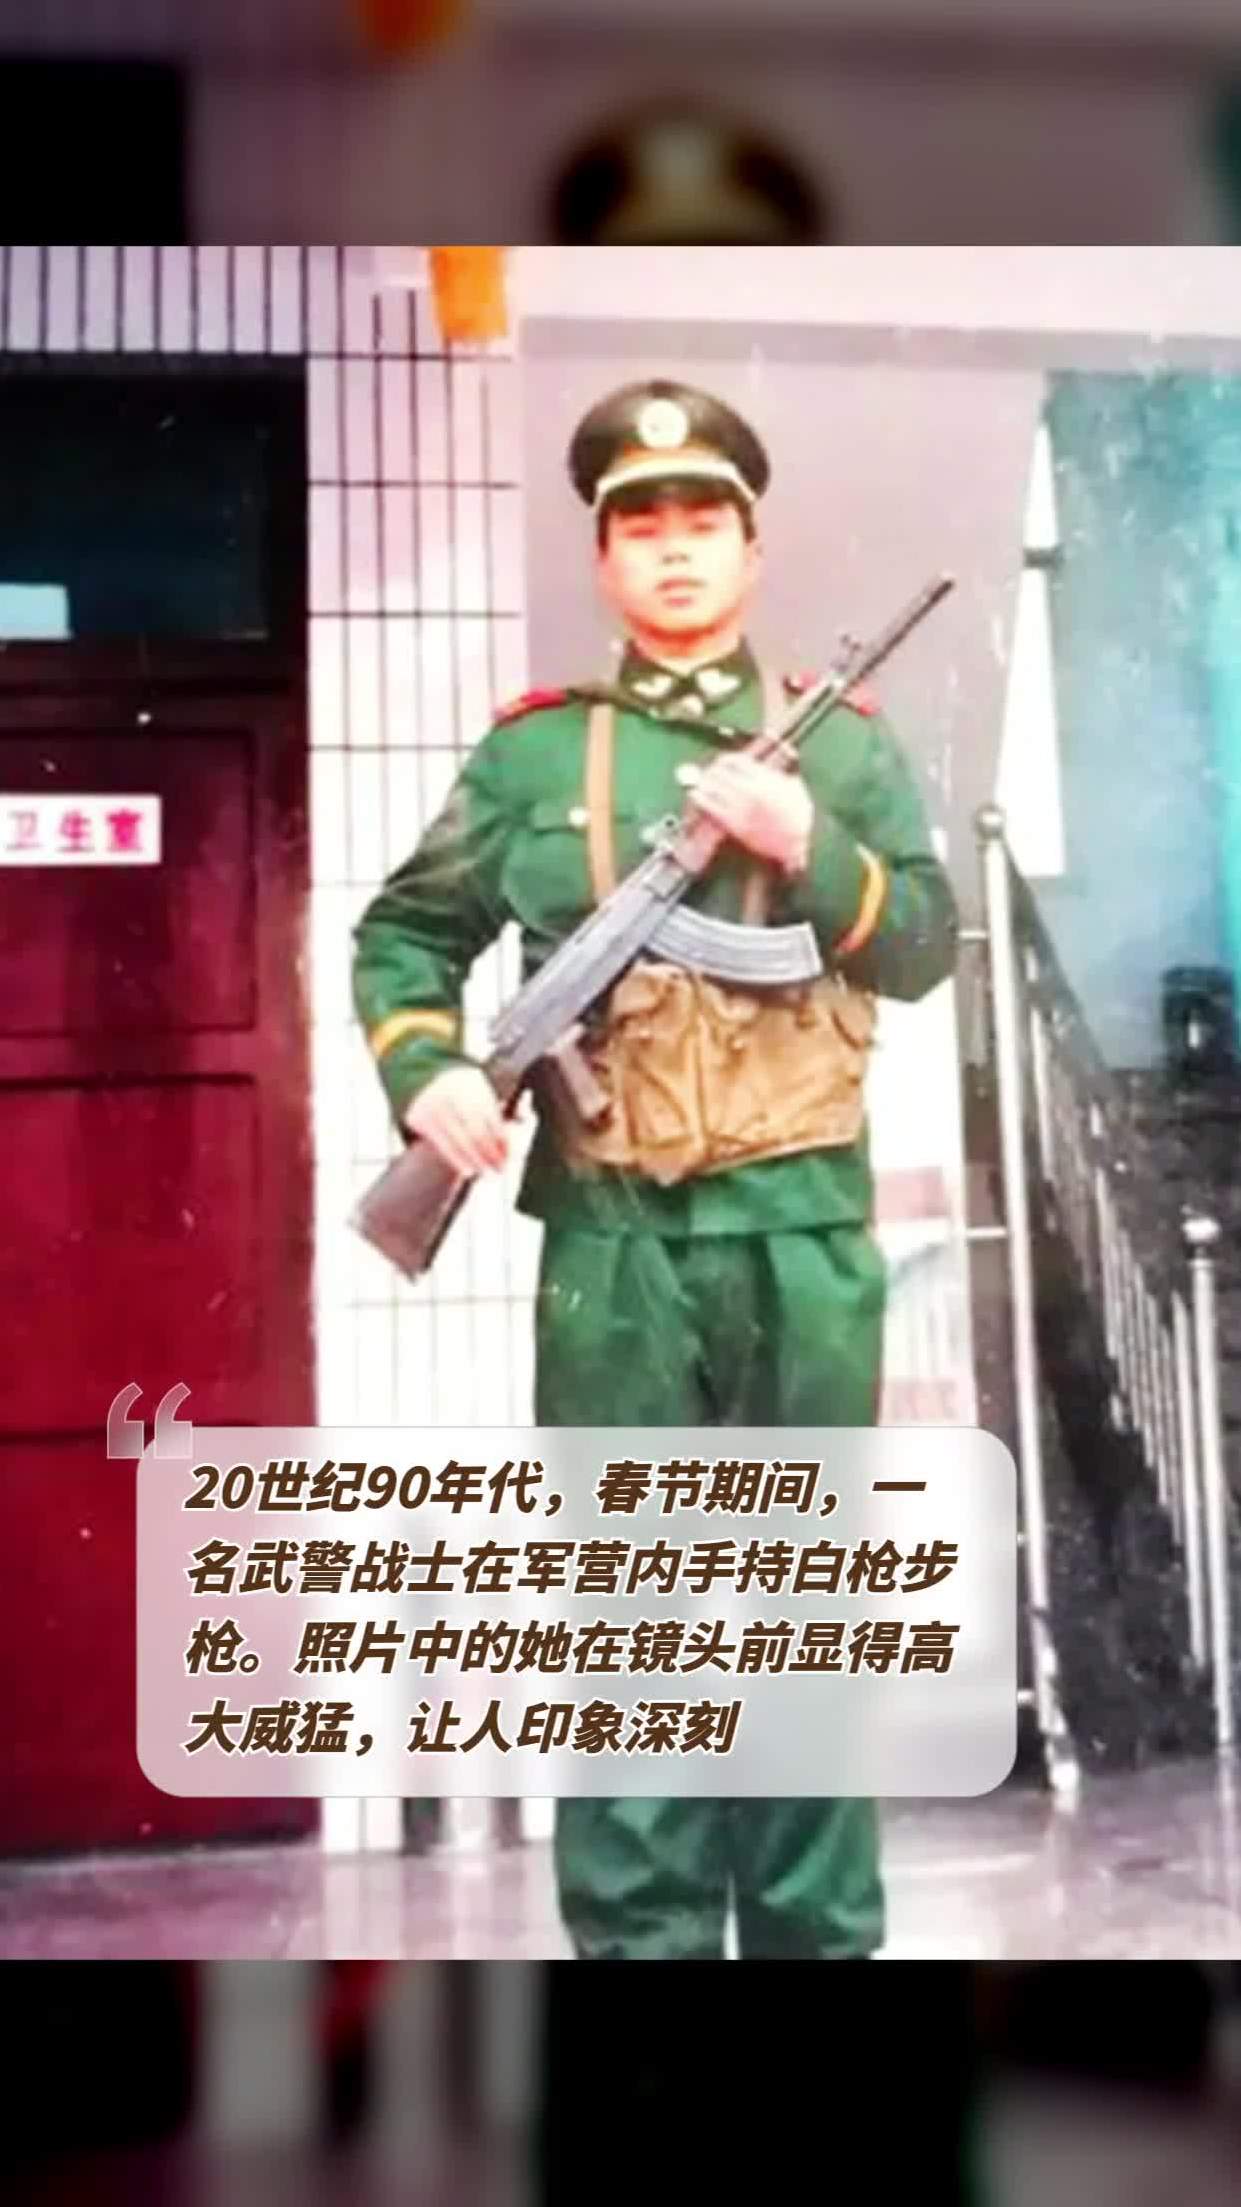 20世纪90年代,春节期间,一名武警战士在军营内手持白枪步枪